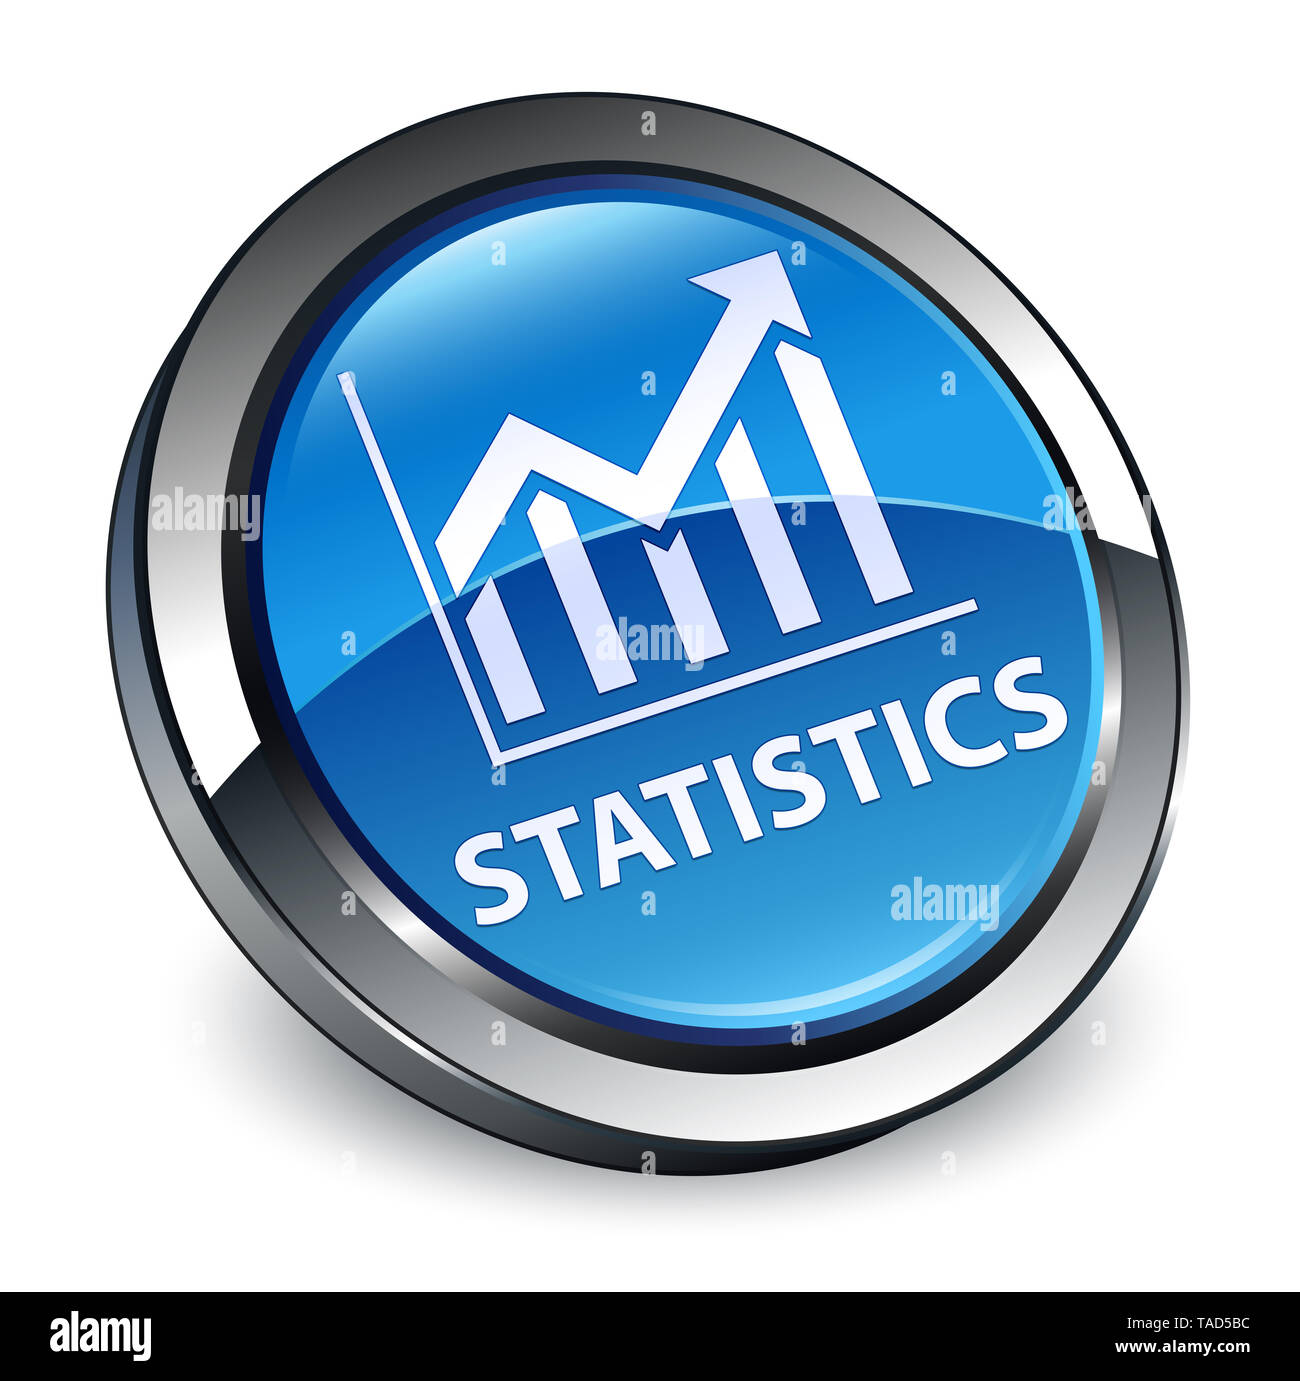 Statistiche isolati su 3d blu pulsante rotondo illustrazione astratta Foto Stock